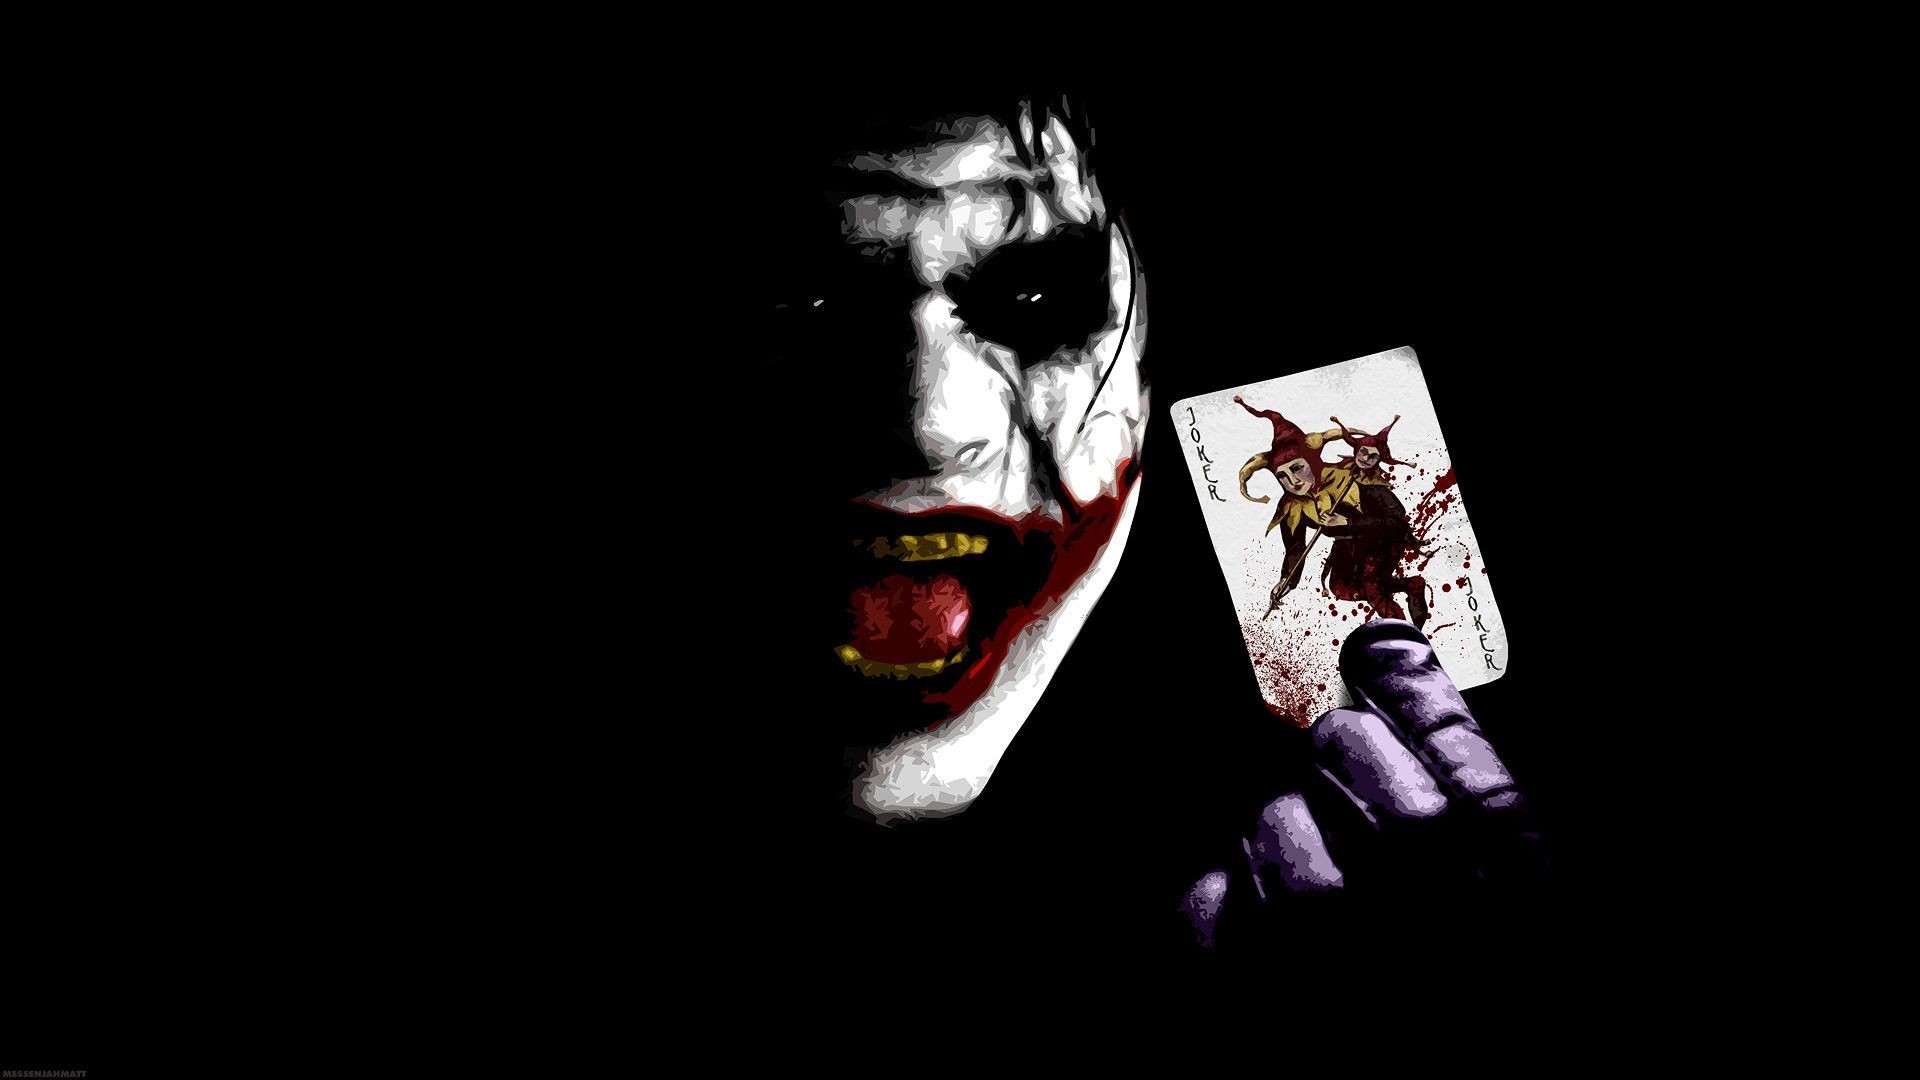 Joker Batman Wallpaper 75 Pictures